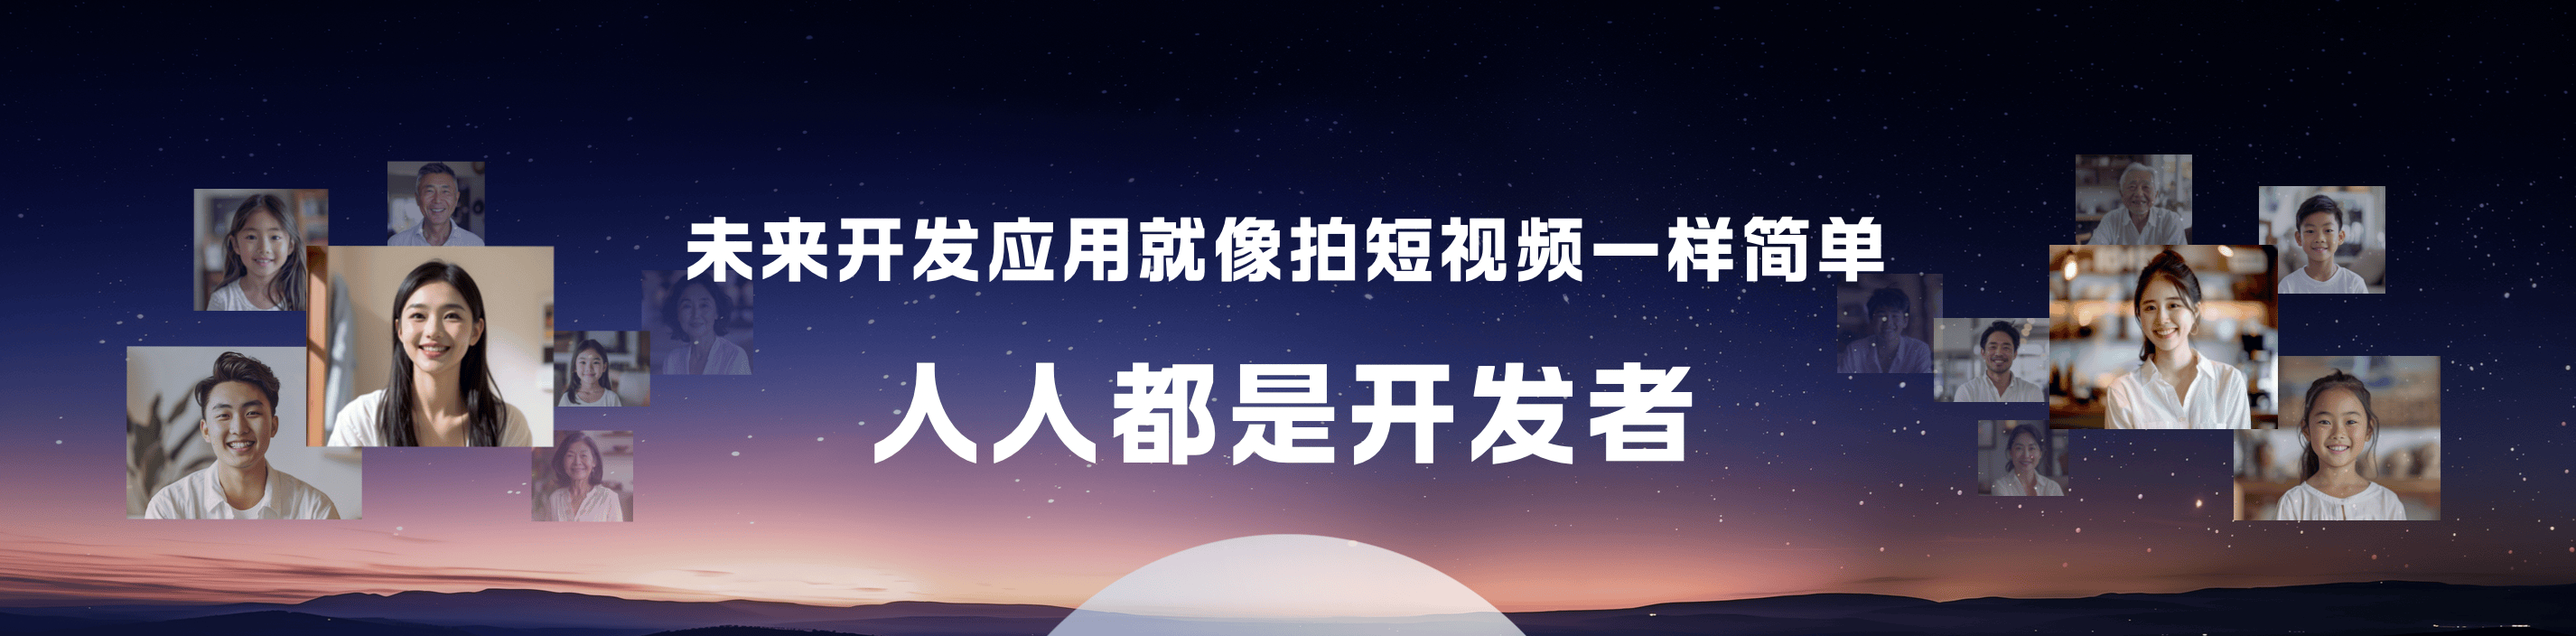 Baidu CEO Li Yanhong: Wenxin Yiyan surpasses 200m users, launches 3 AI tools